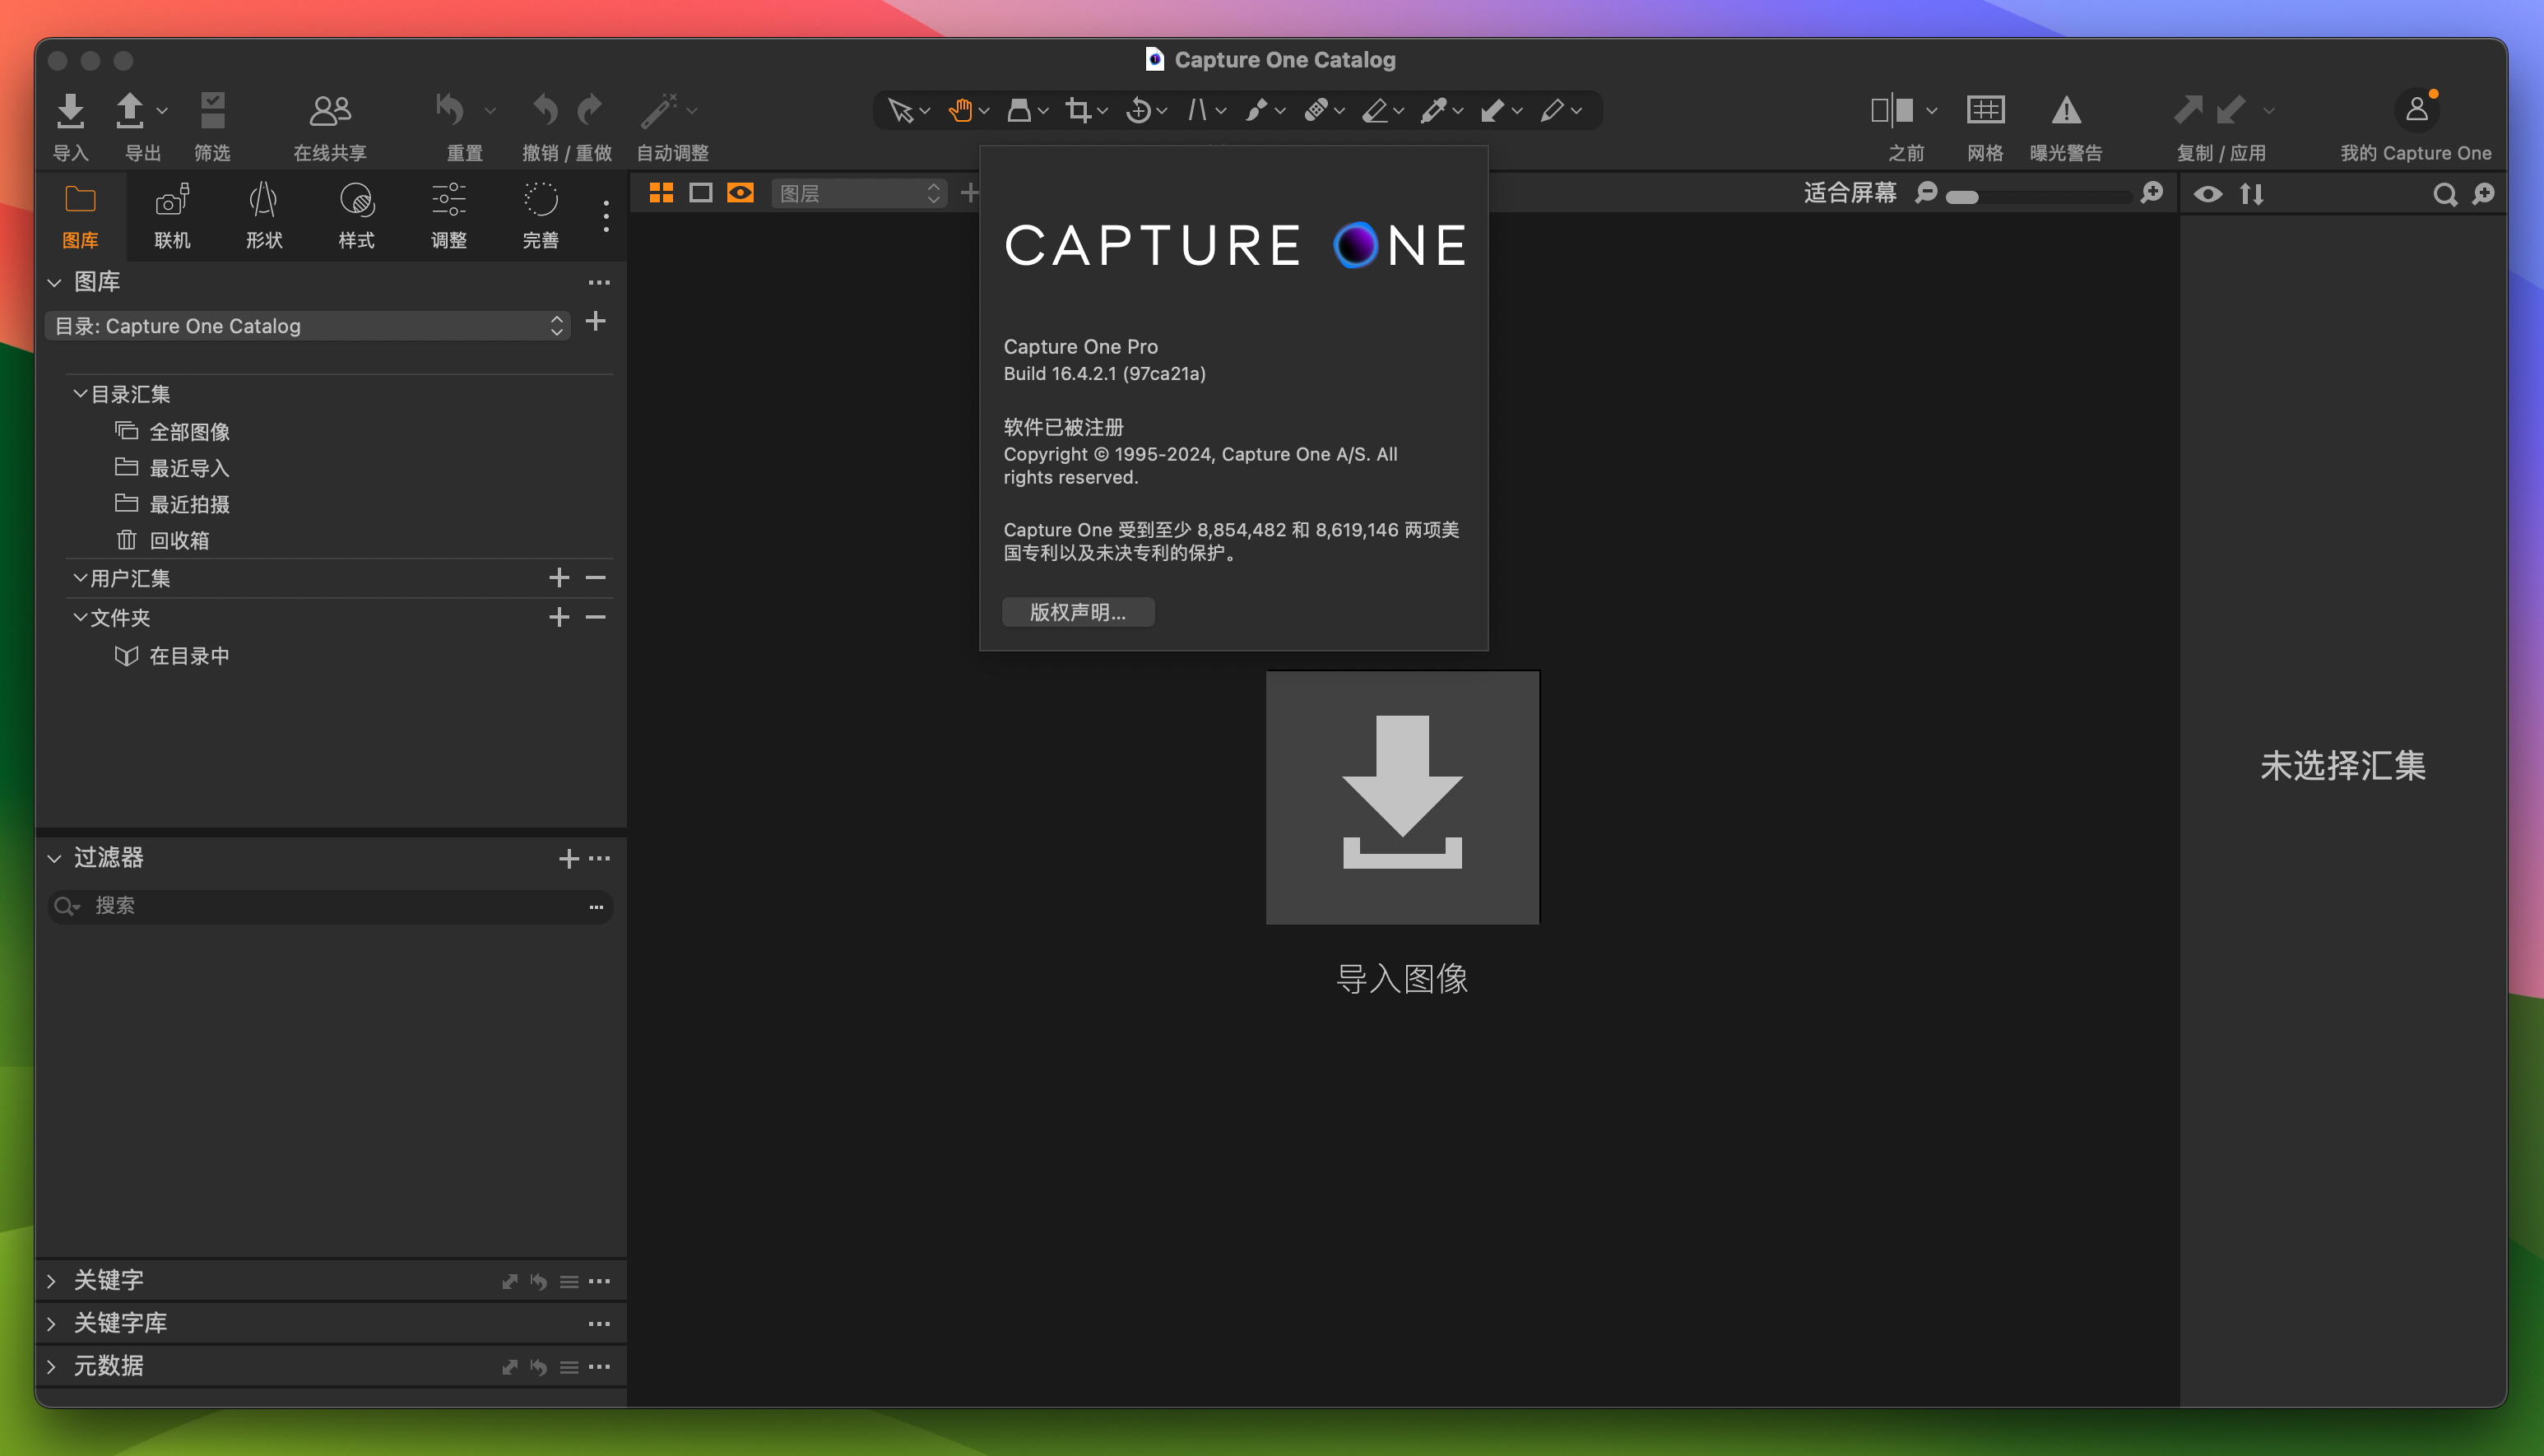 Capture One 23 Pro for Mac v16.4.2.1 RAW转换和图像编辑工具 免激活下载-1